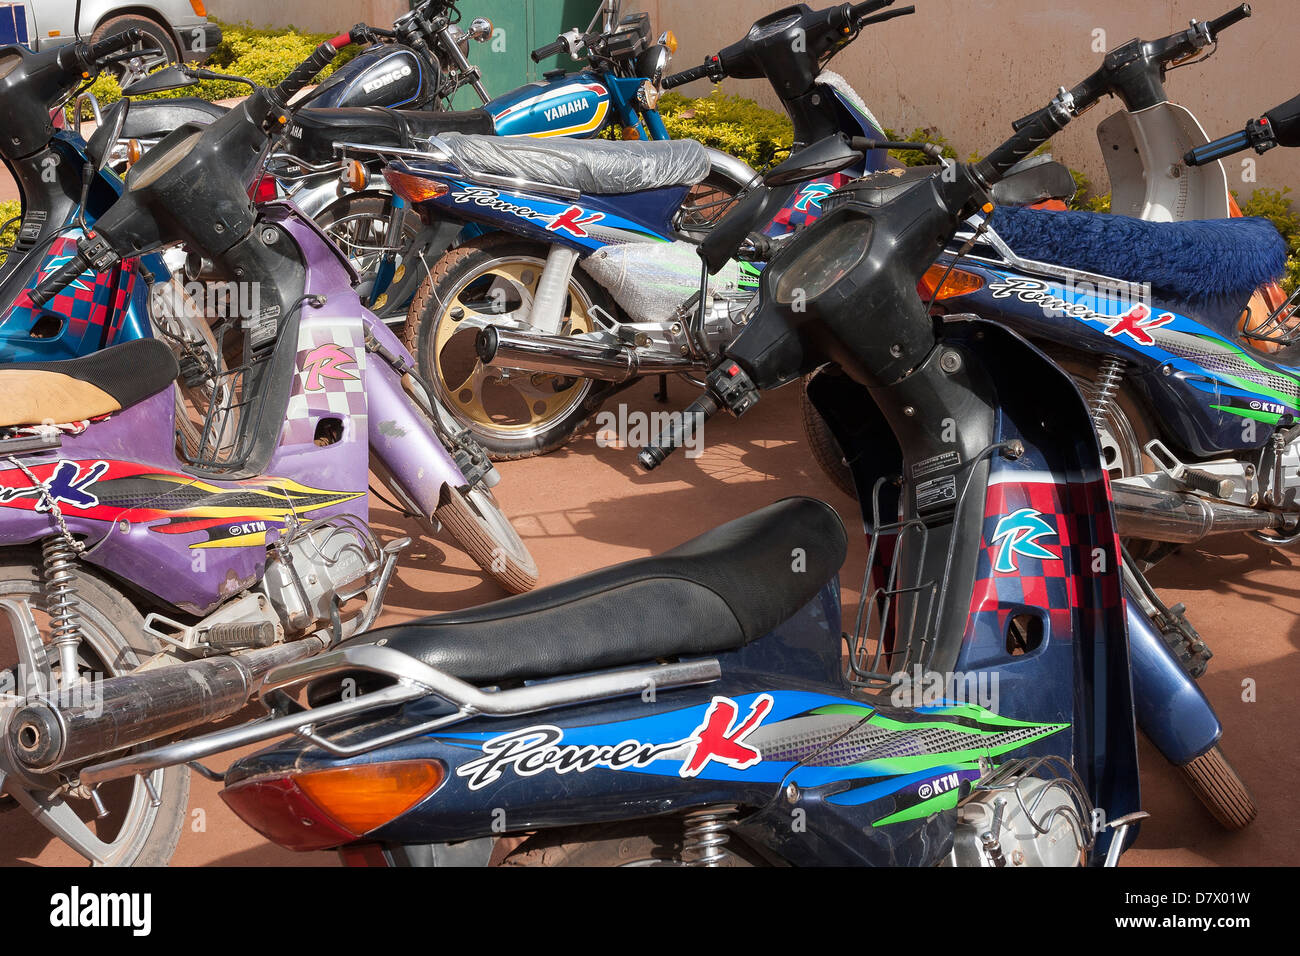 Close up de motos, un mode traditionnelle malienne de transport de la ville, stationné en étroite collaboration à la rue, Mopti, Mali Banque D'Images